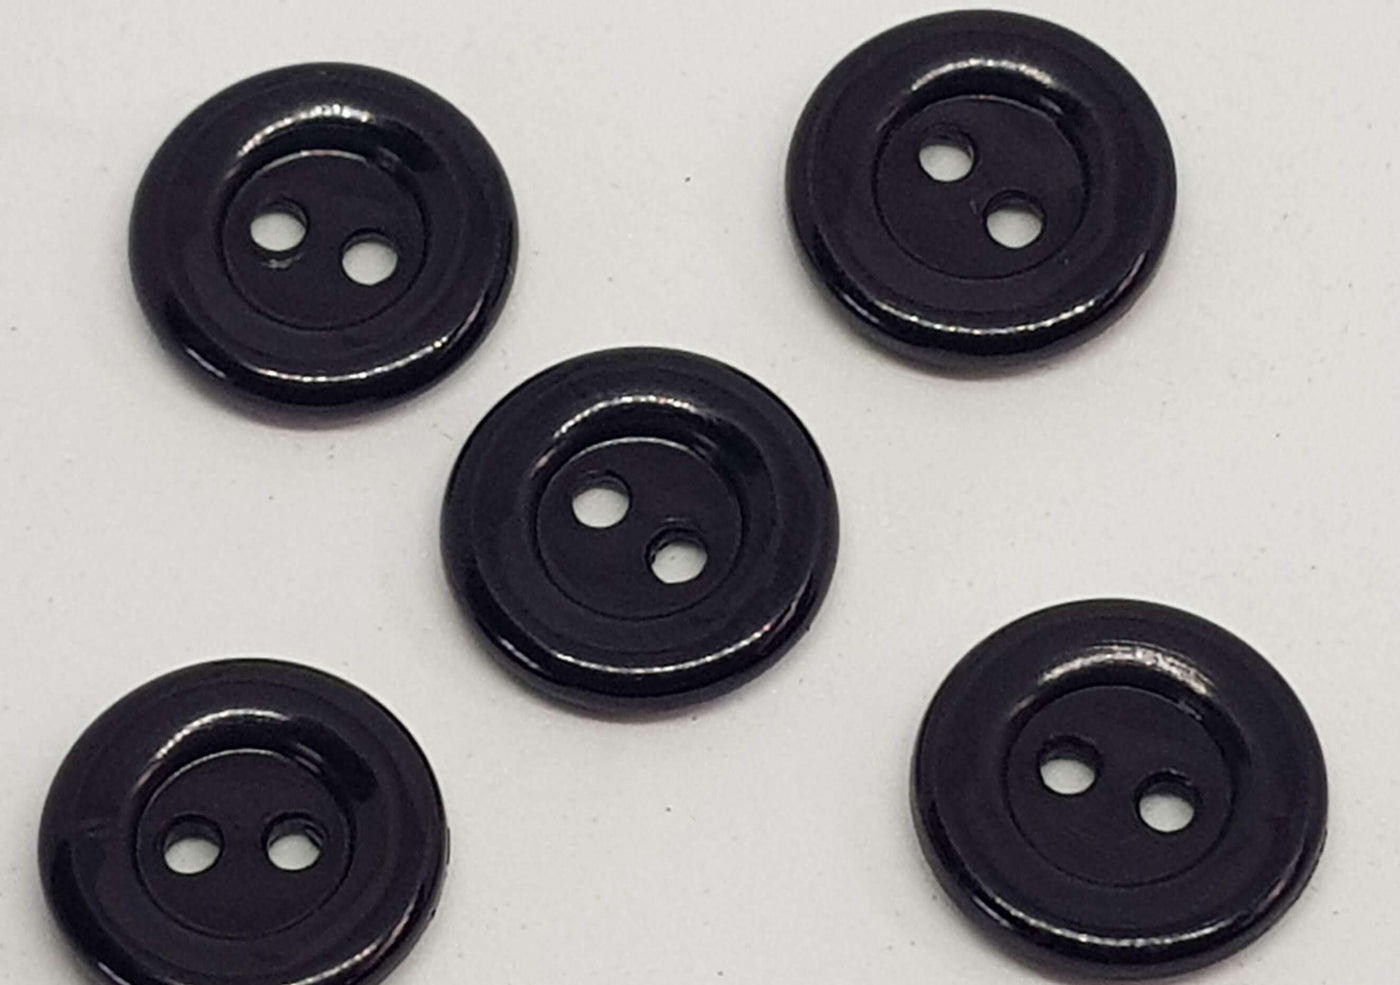 Carsini Italian Shiny Plastic Buttons x 10pcs 2 HOLE 12/15mm